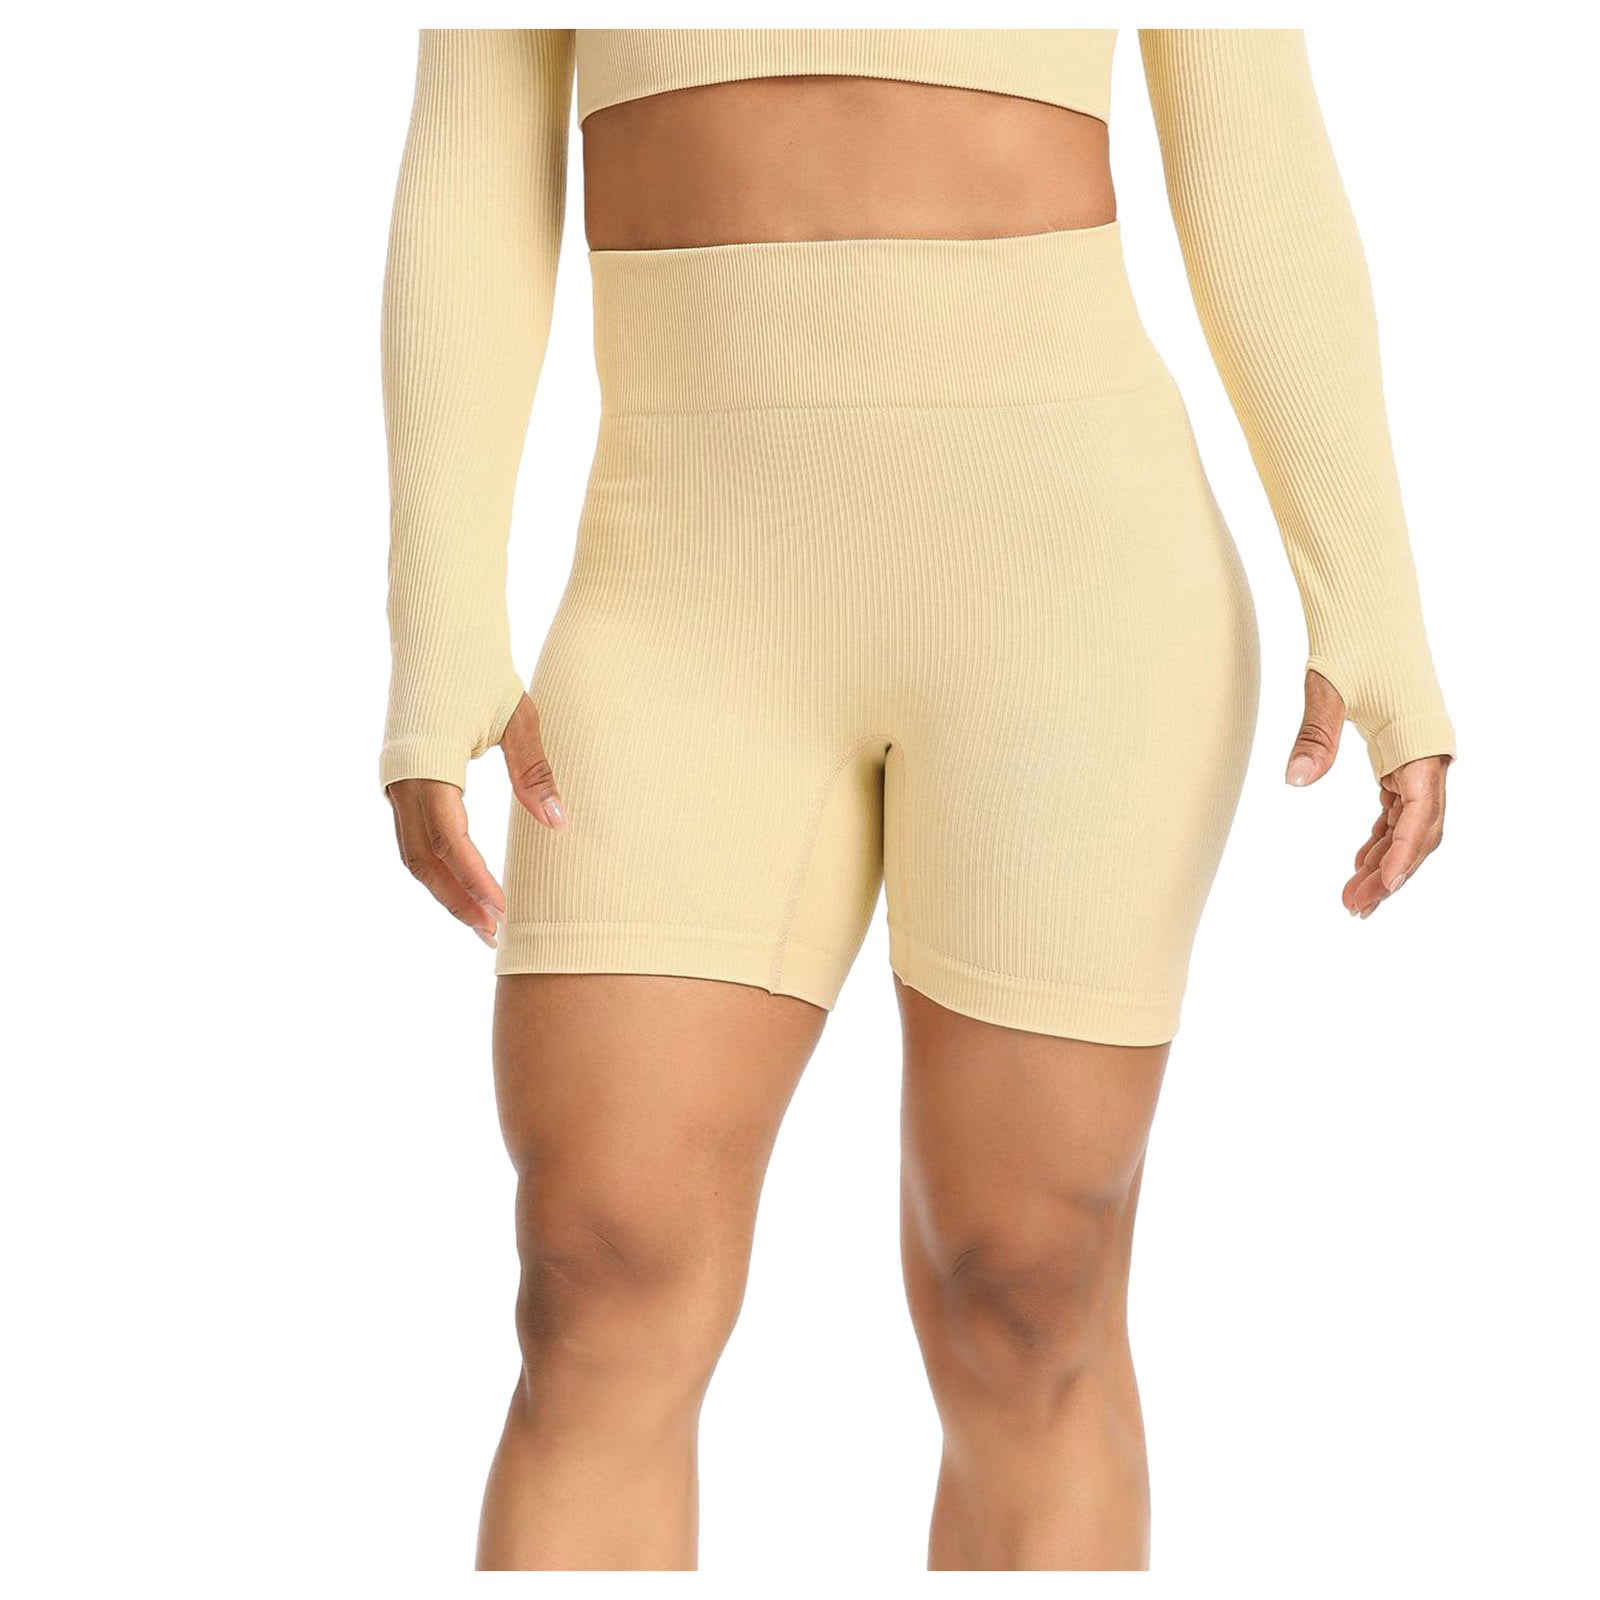 MRULIC yoga shorts for women Yoga Fitness Shorts Women Out Leggings Shorts  Athletic Yoga Running Workout Sports Yoga Pants Orange + S